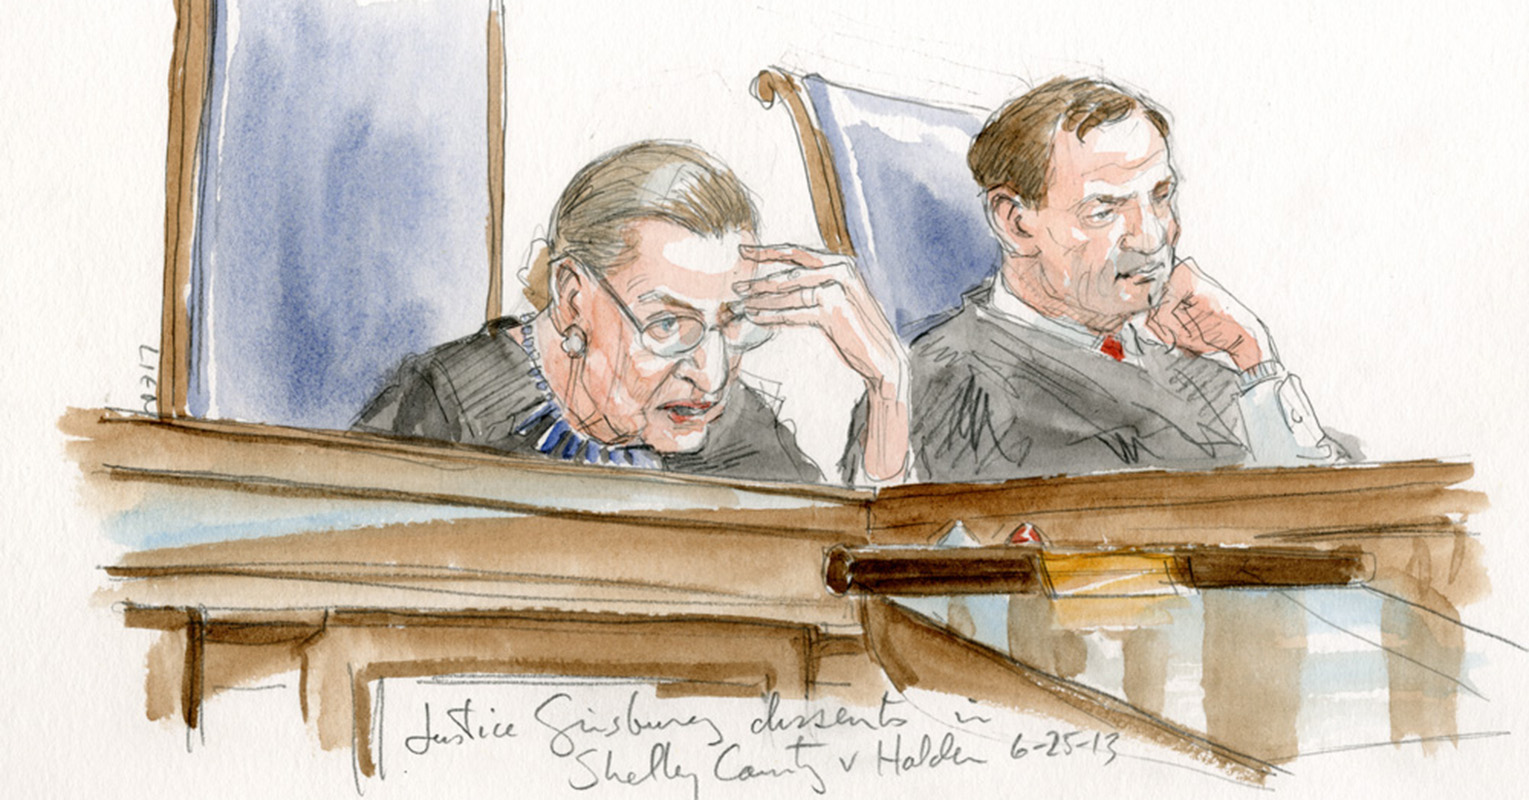 RBG Courtroom Sketch